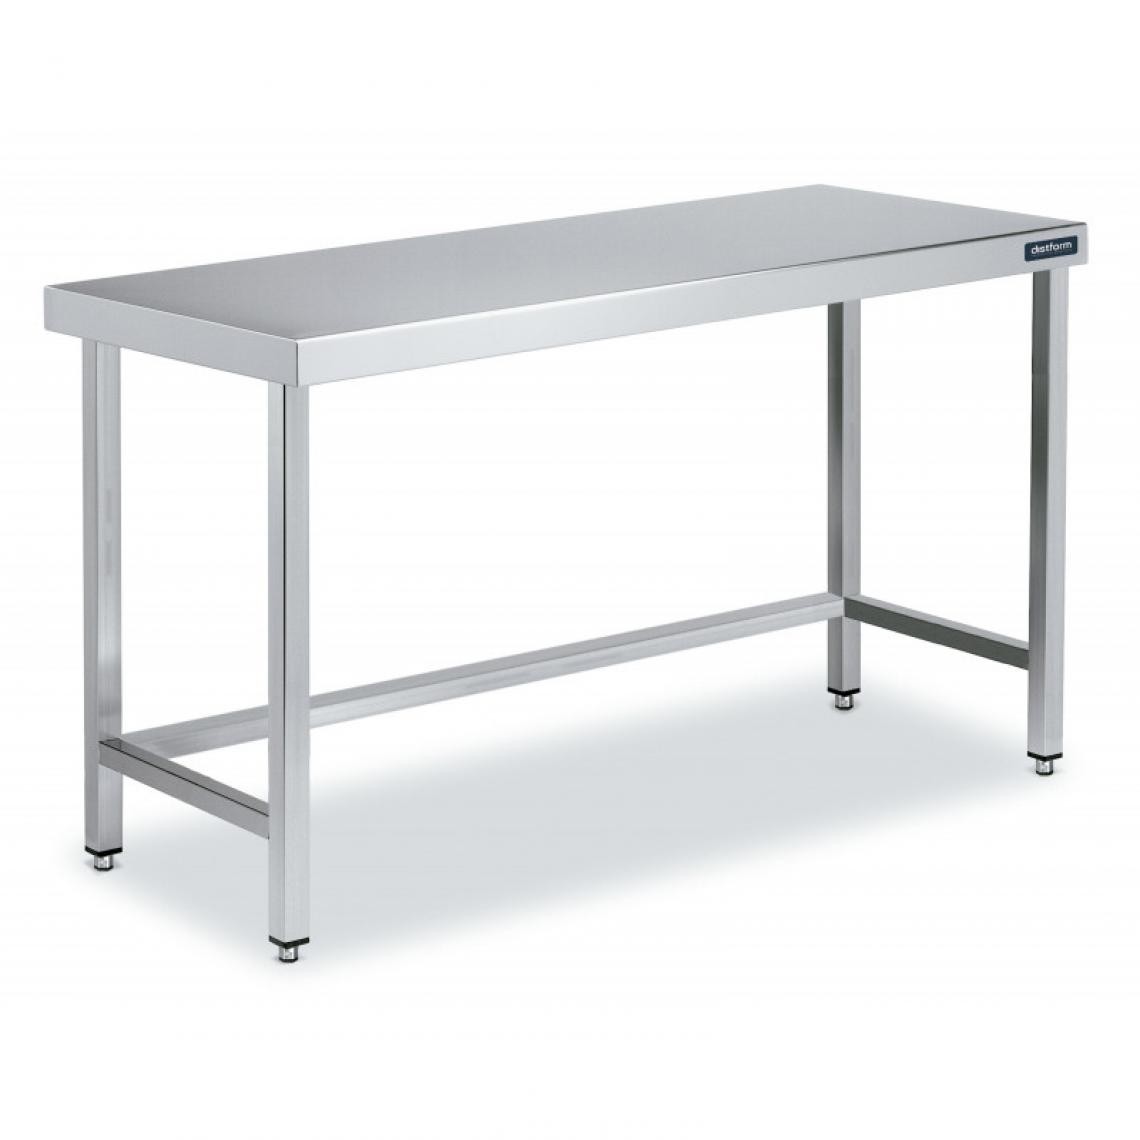 DISTFORM - Table Centrale en Inox avec renforts Profondeur 600mm - Distform - Acier inoxydable700x600 - Tables à manger